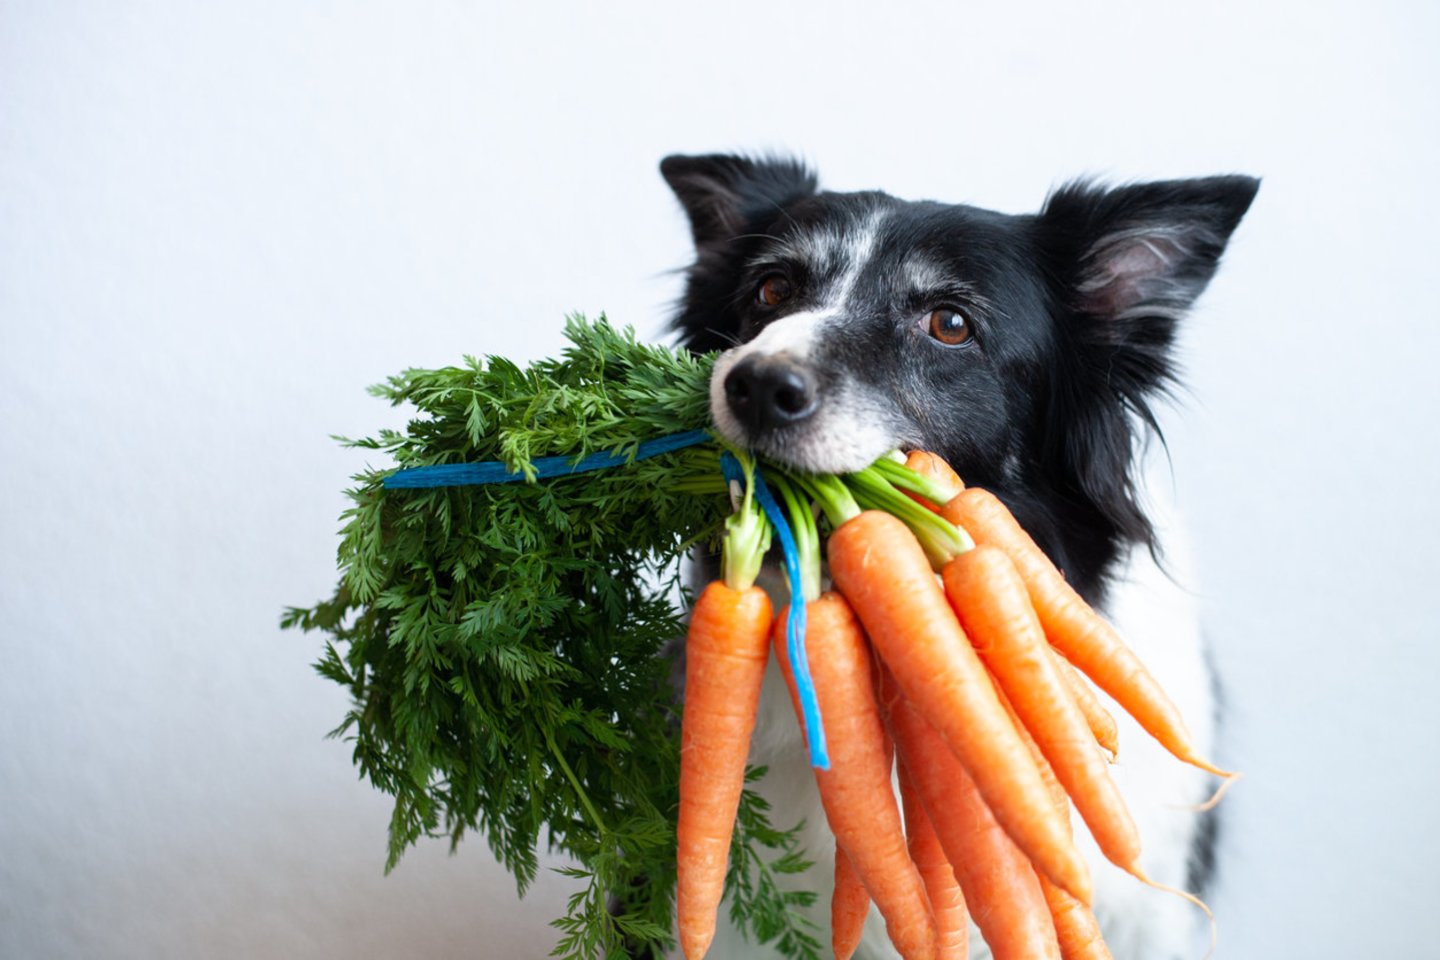  Kai kurie vaisiai ir daržovės naudingi ir šunims: kuriuos augintiniui siūlyti, o kurių šiukštu negalima duoti.